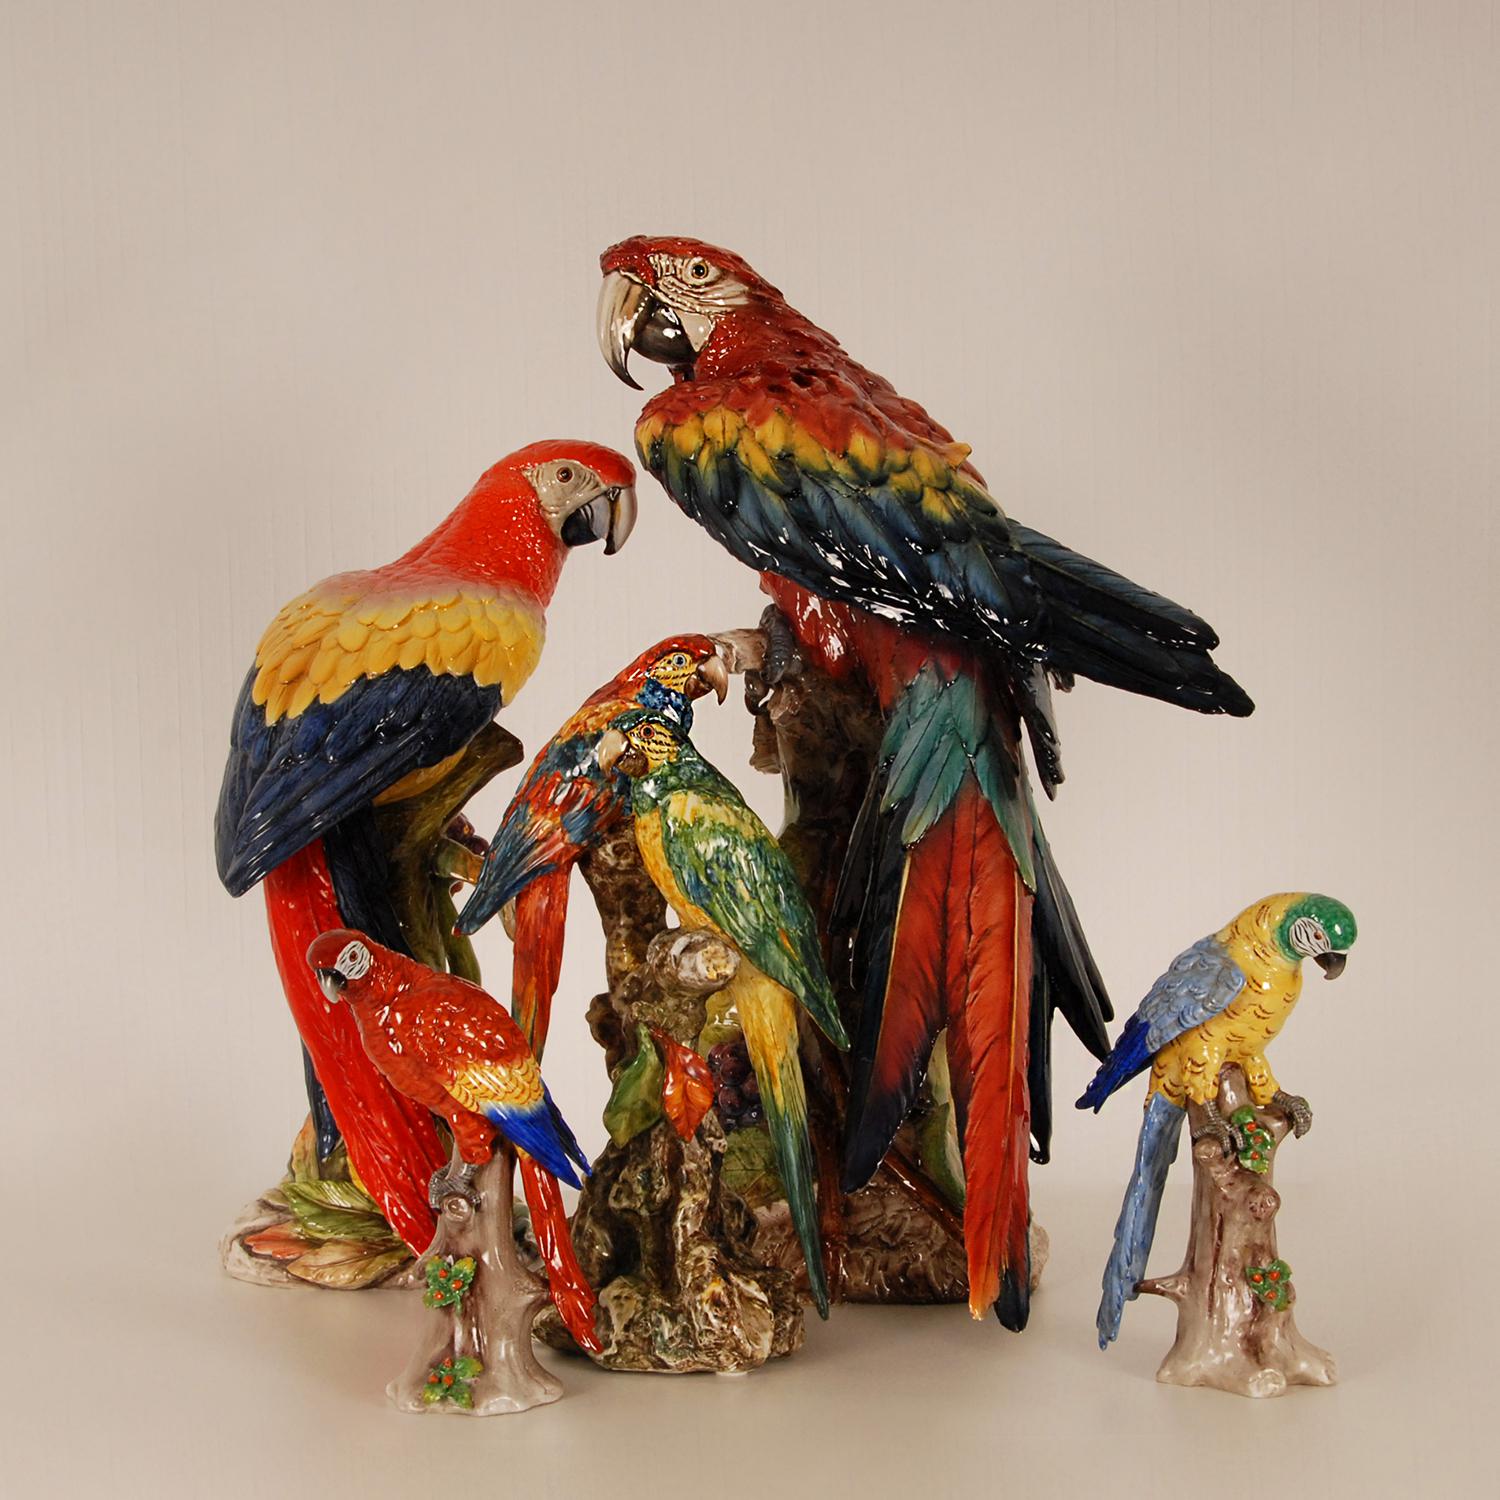 Art Deco Italian Ceramic Animal Figurine Macaw Parrot Porcelain Bird Figure For Sale 2